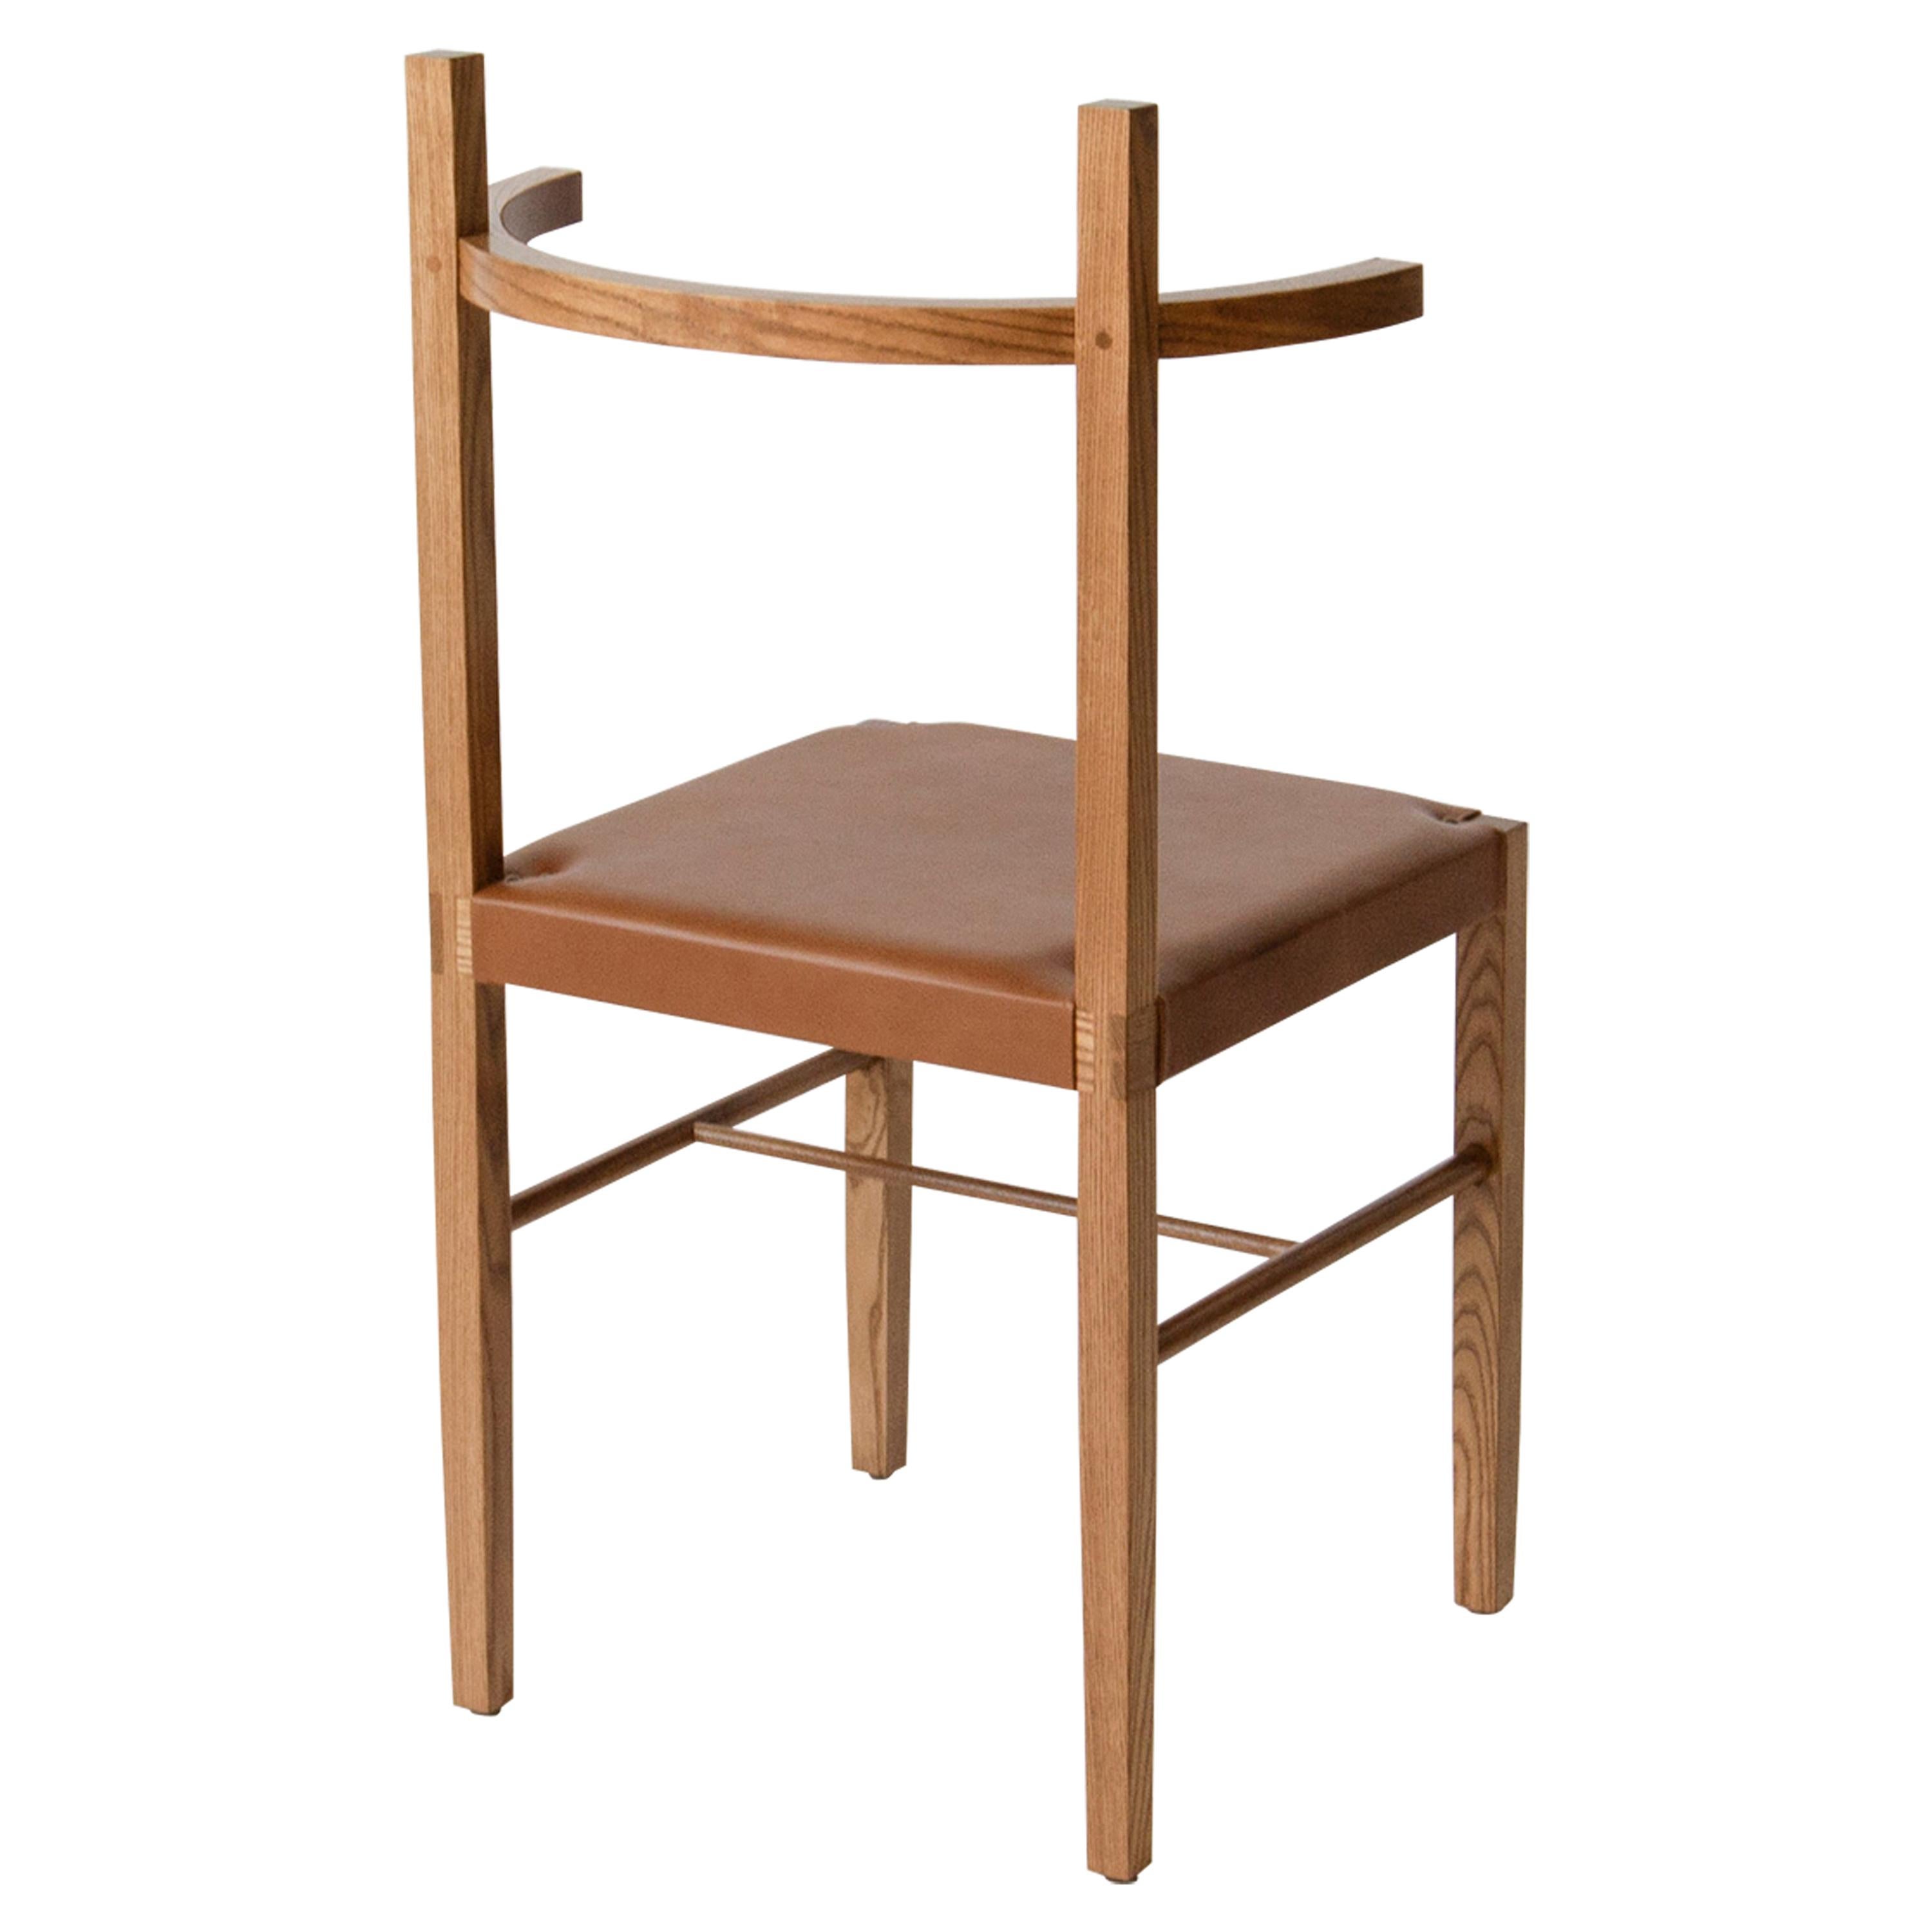 Soren Chair in Cinnamon Ashwood and Tan Leather